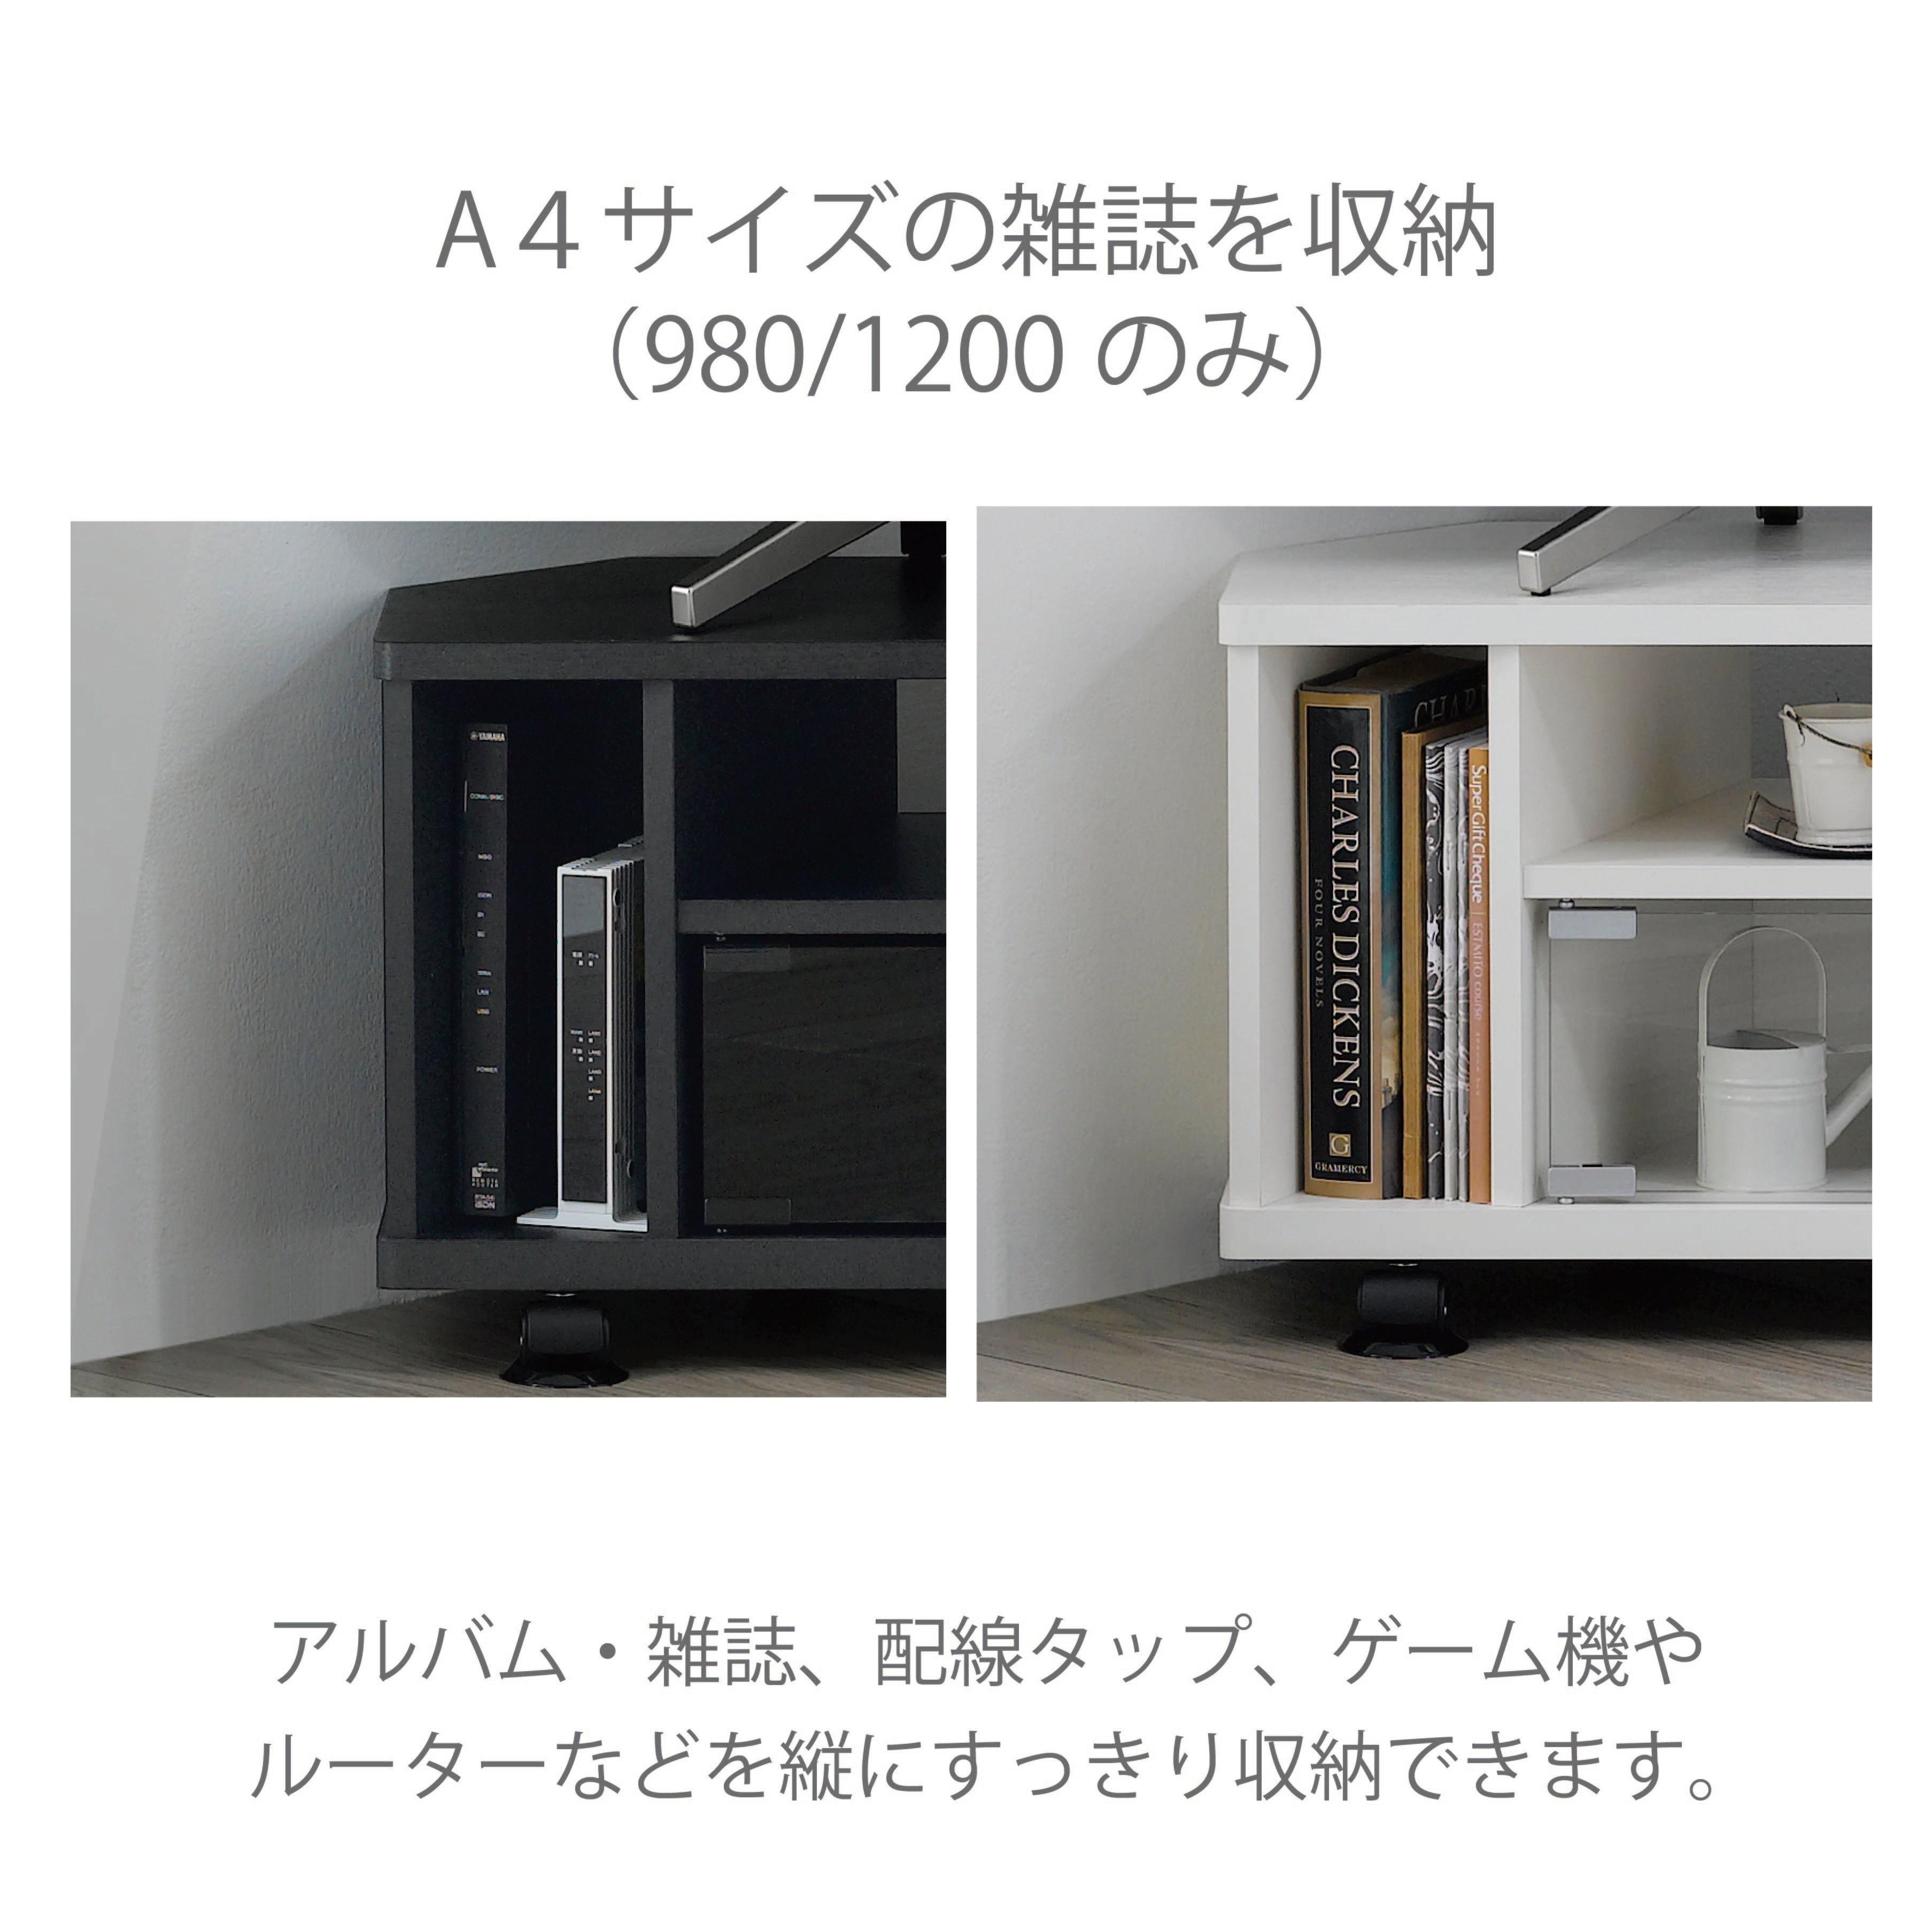 朝日木材加工 テレビ台 KAD style 43型 幅98cm ブラック キャスター付き AS-KAD980-B - 1